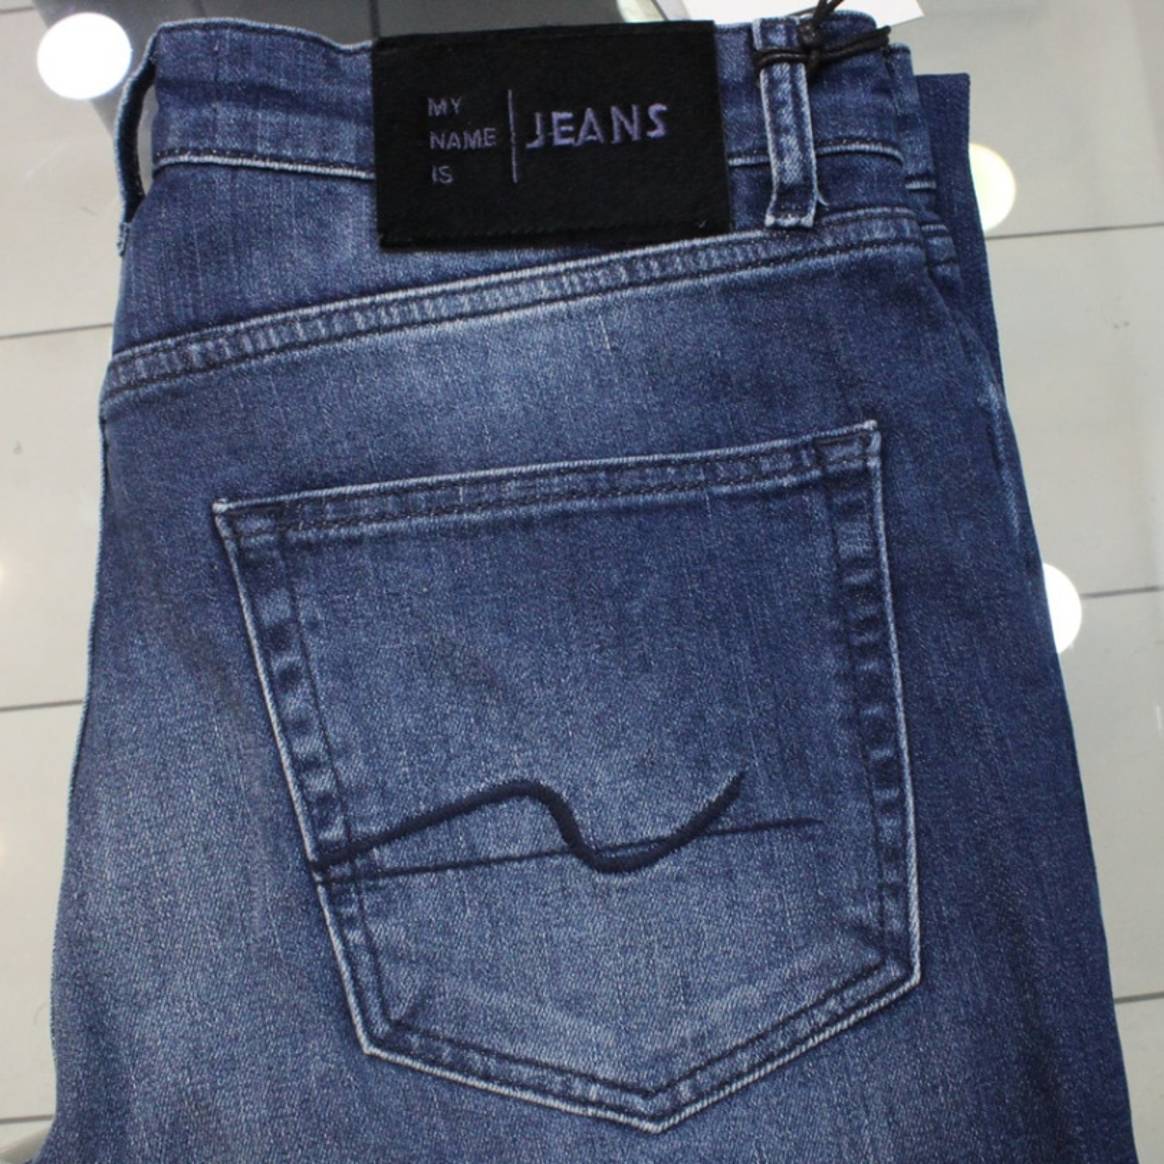 Beeld via: My name is jeans